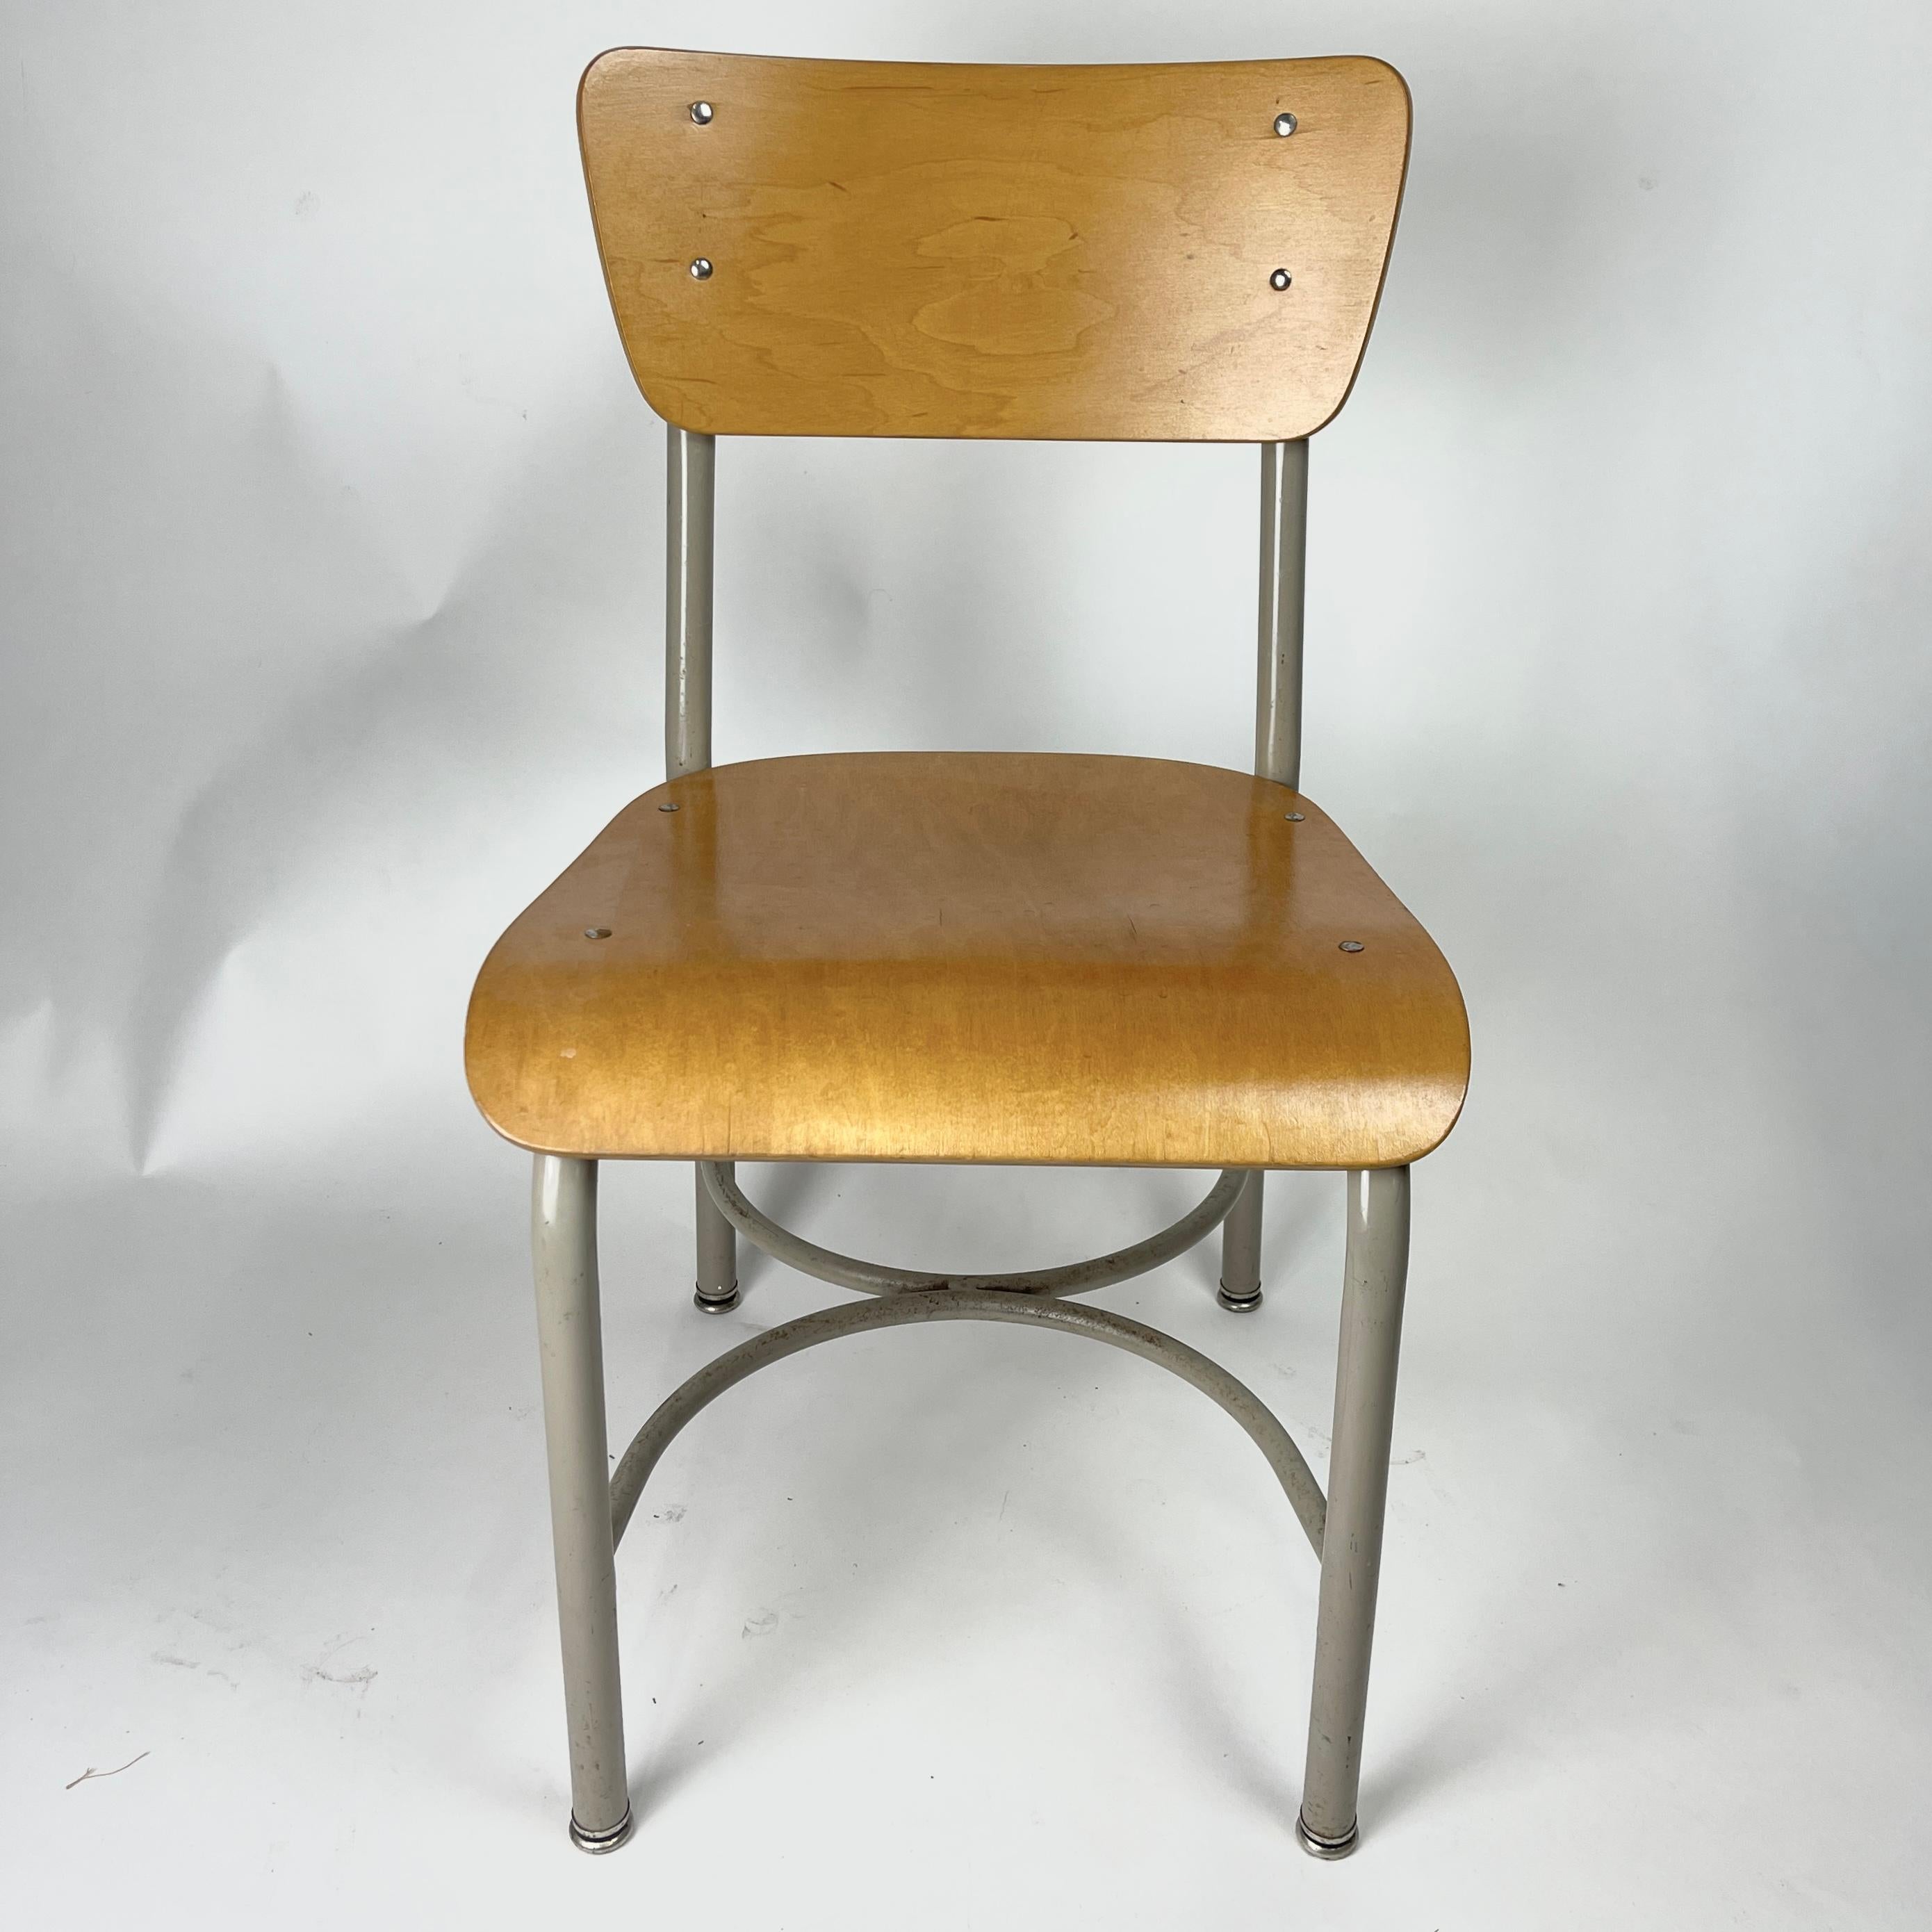 40 verfügbar. Elegante, grau gerahmte Schulstühle mit Sitz und Rückenlehne aus gebogenem Birkensperrholz. Es handelt sich um Schulstühle im Vintage-Stil aus der Mitte des Jahrhunderts, die in einer rustikalen oder zeitgenössischen Küche oder einem